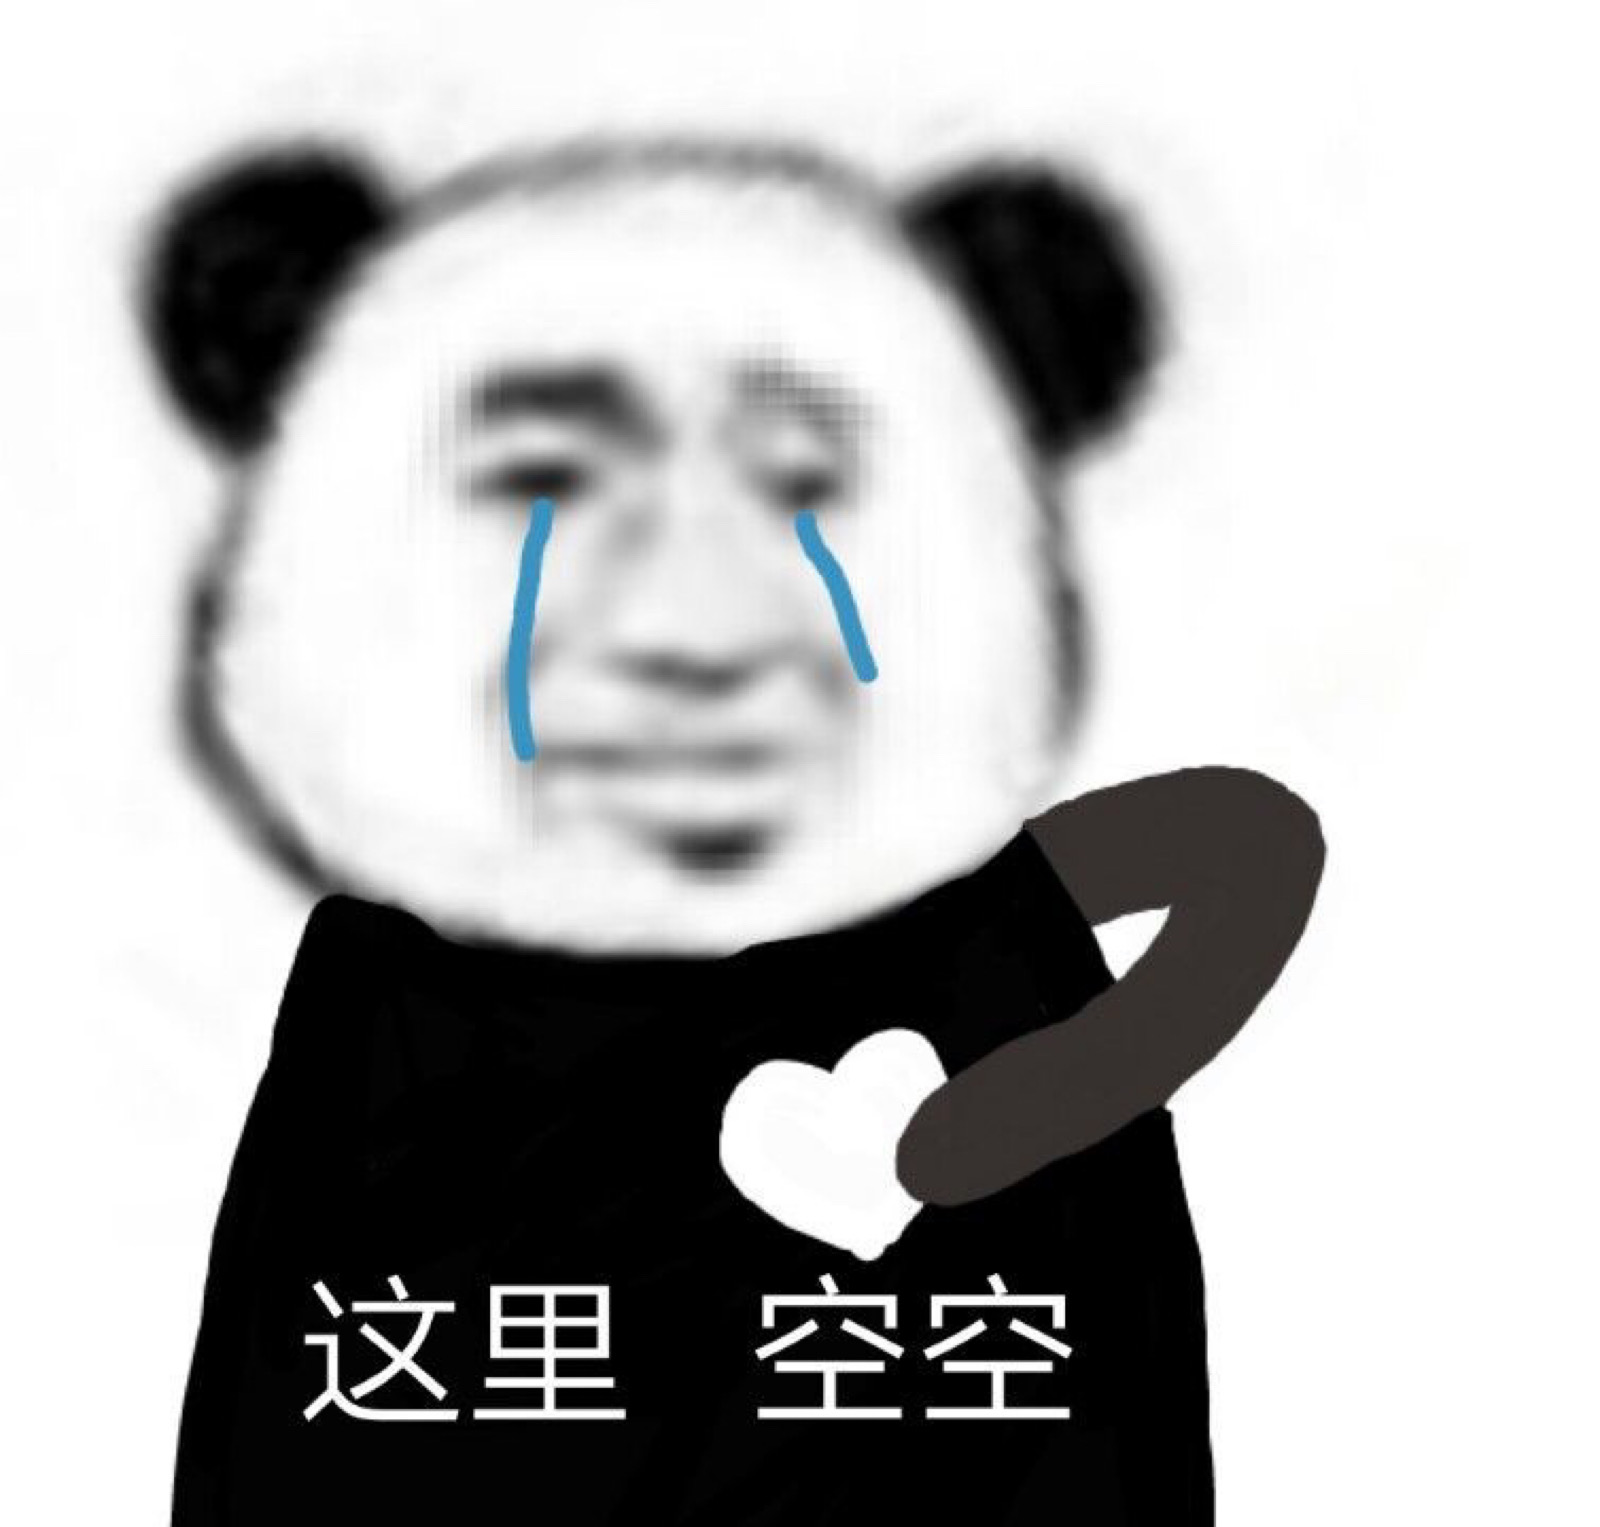 熊猫头流泪：爱过头了 把自己也搭进去了表情包图片gif动图 - 求表情网,斗图从此不求人!